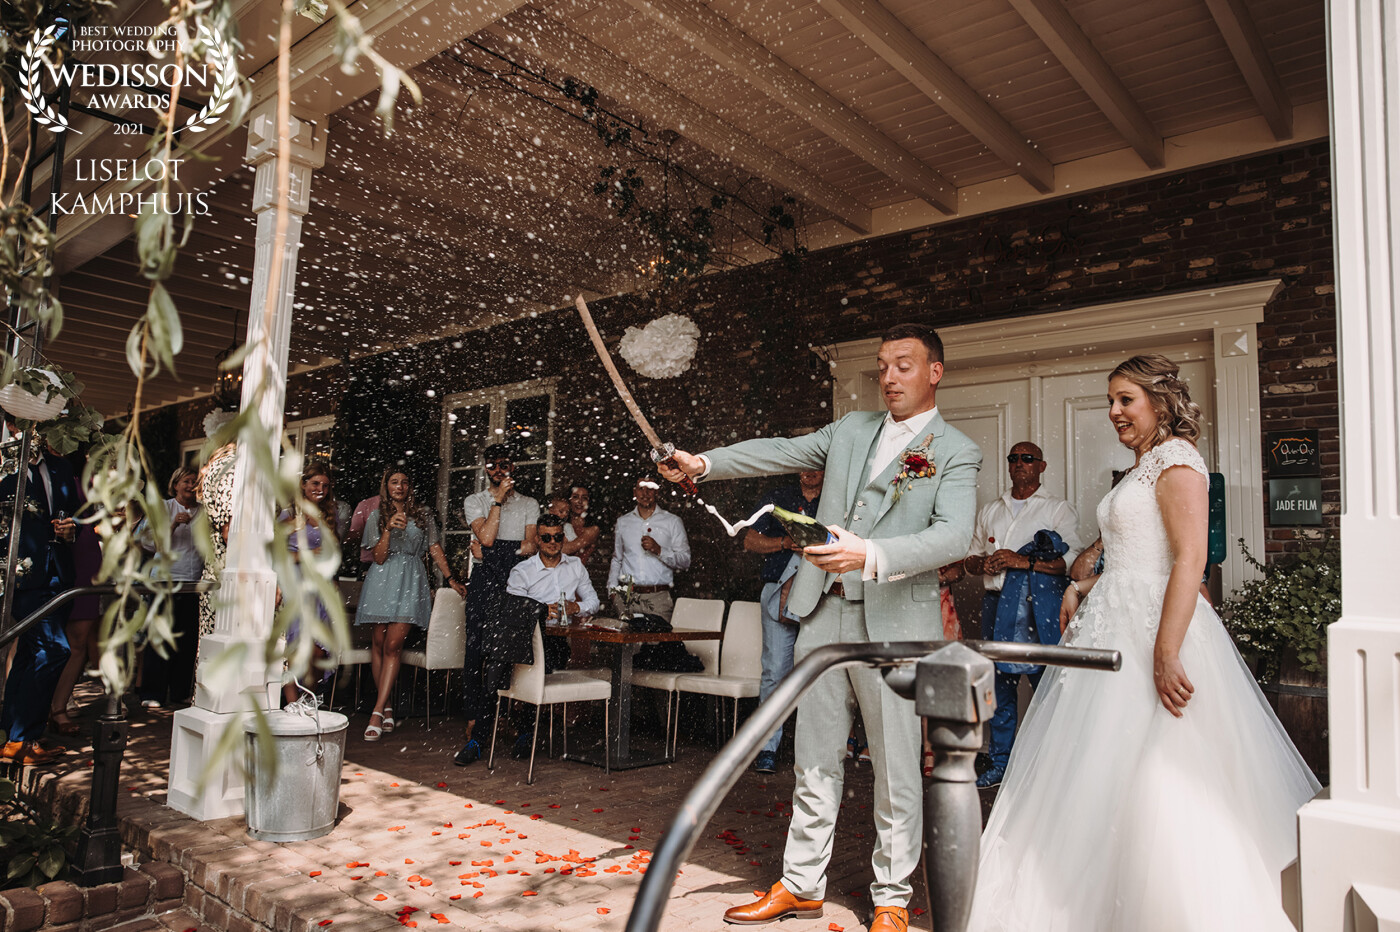 Het sabreren is altijd een spannende en hele toffe gebeurtenis op bruiloften! De blikken van het bruidspaar maken deze foto naar mijn mening helemaal af.